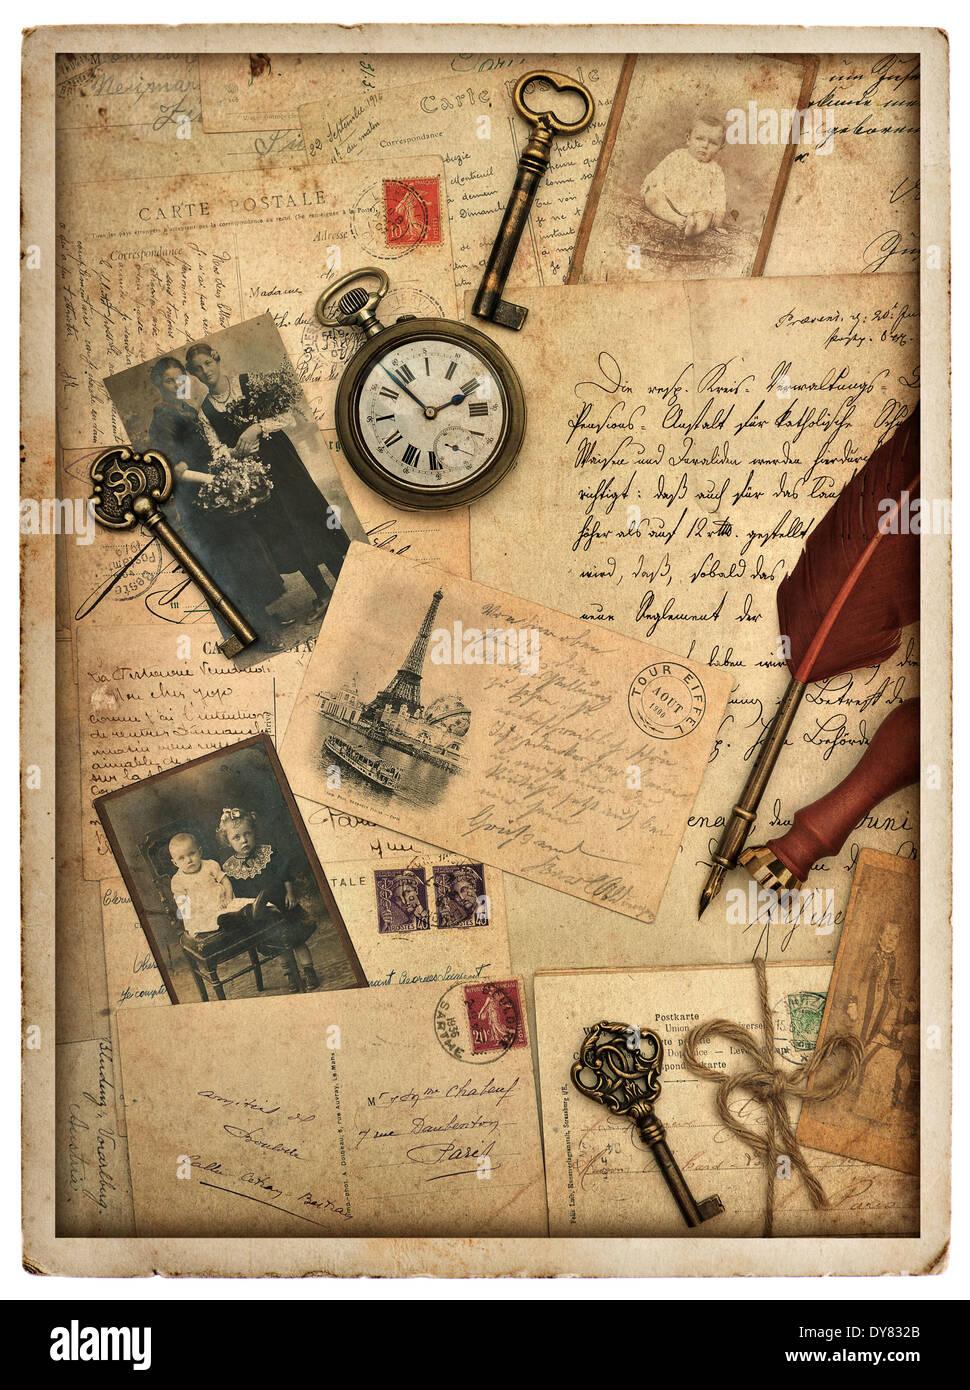 De style vintage nostalgique historique avec de vieilles cartes postales, des lettres et des photos Banque D'Images